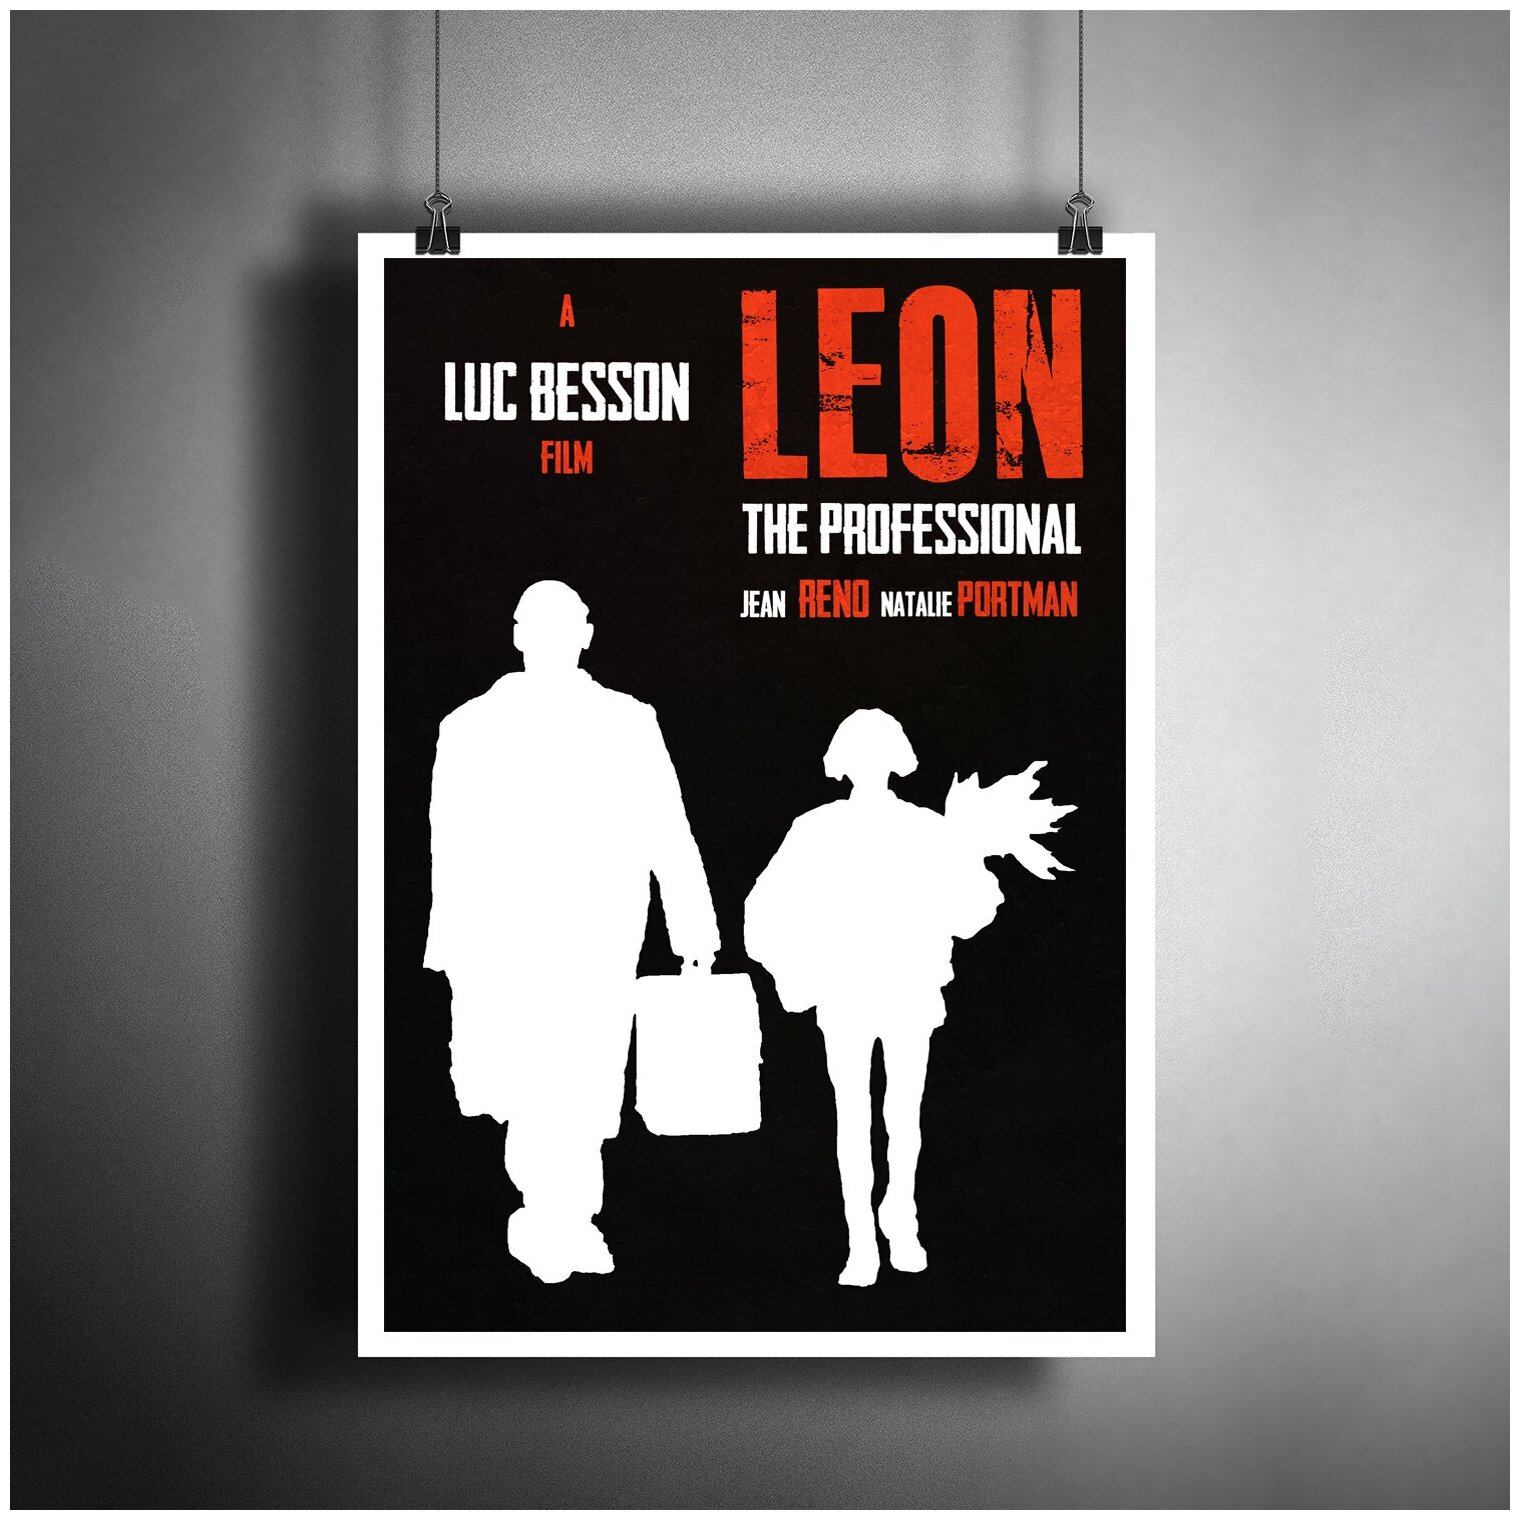 Постер плакат для интерьера "Фильм Люка Бессона: Леон. Leon"/ Декор дома, офиса, комнаты A3 (297 x 420 мм)